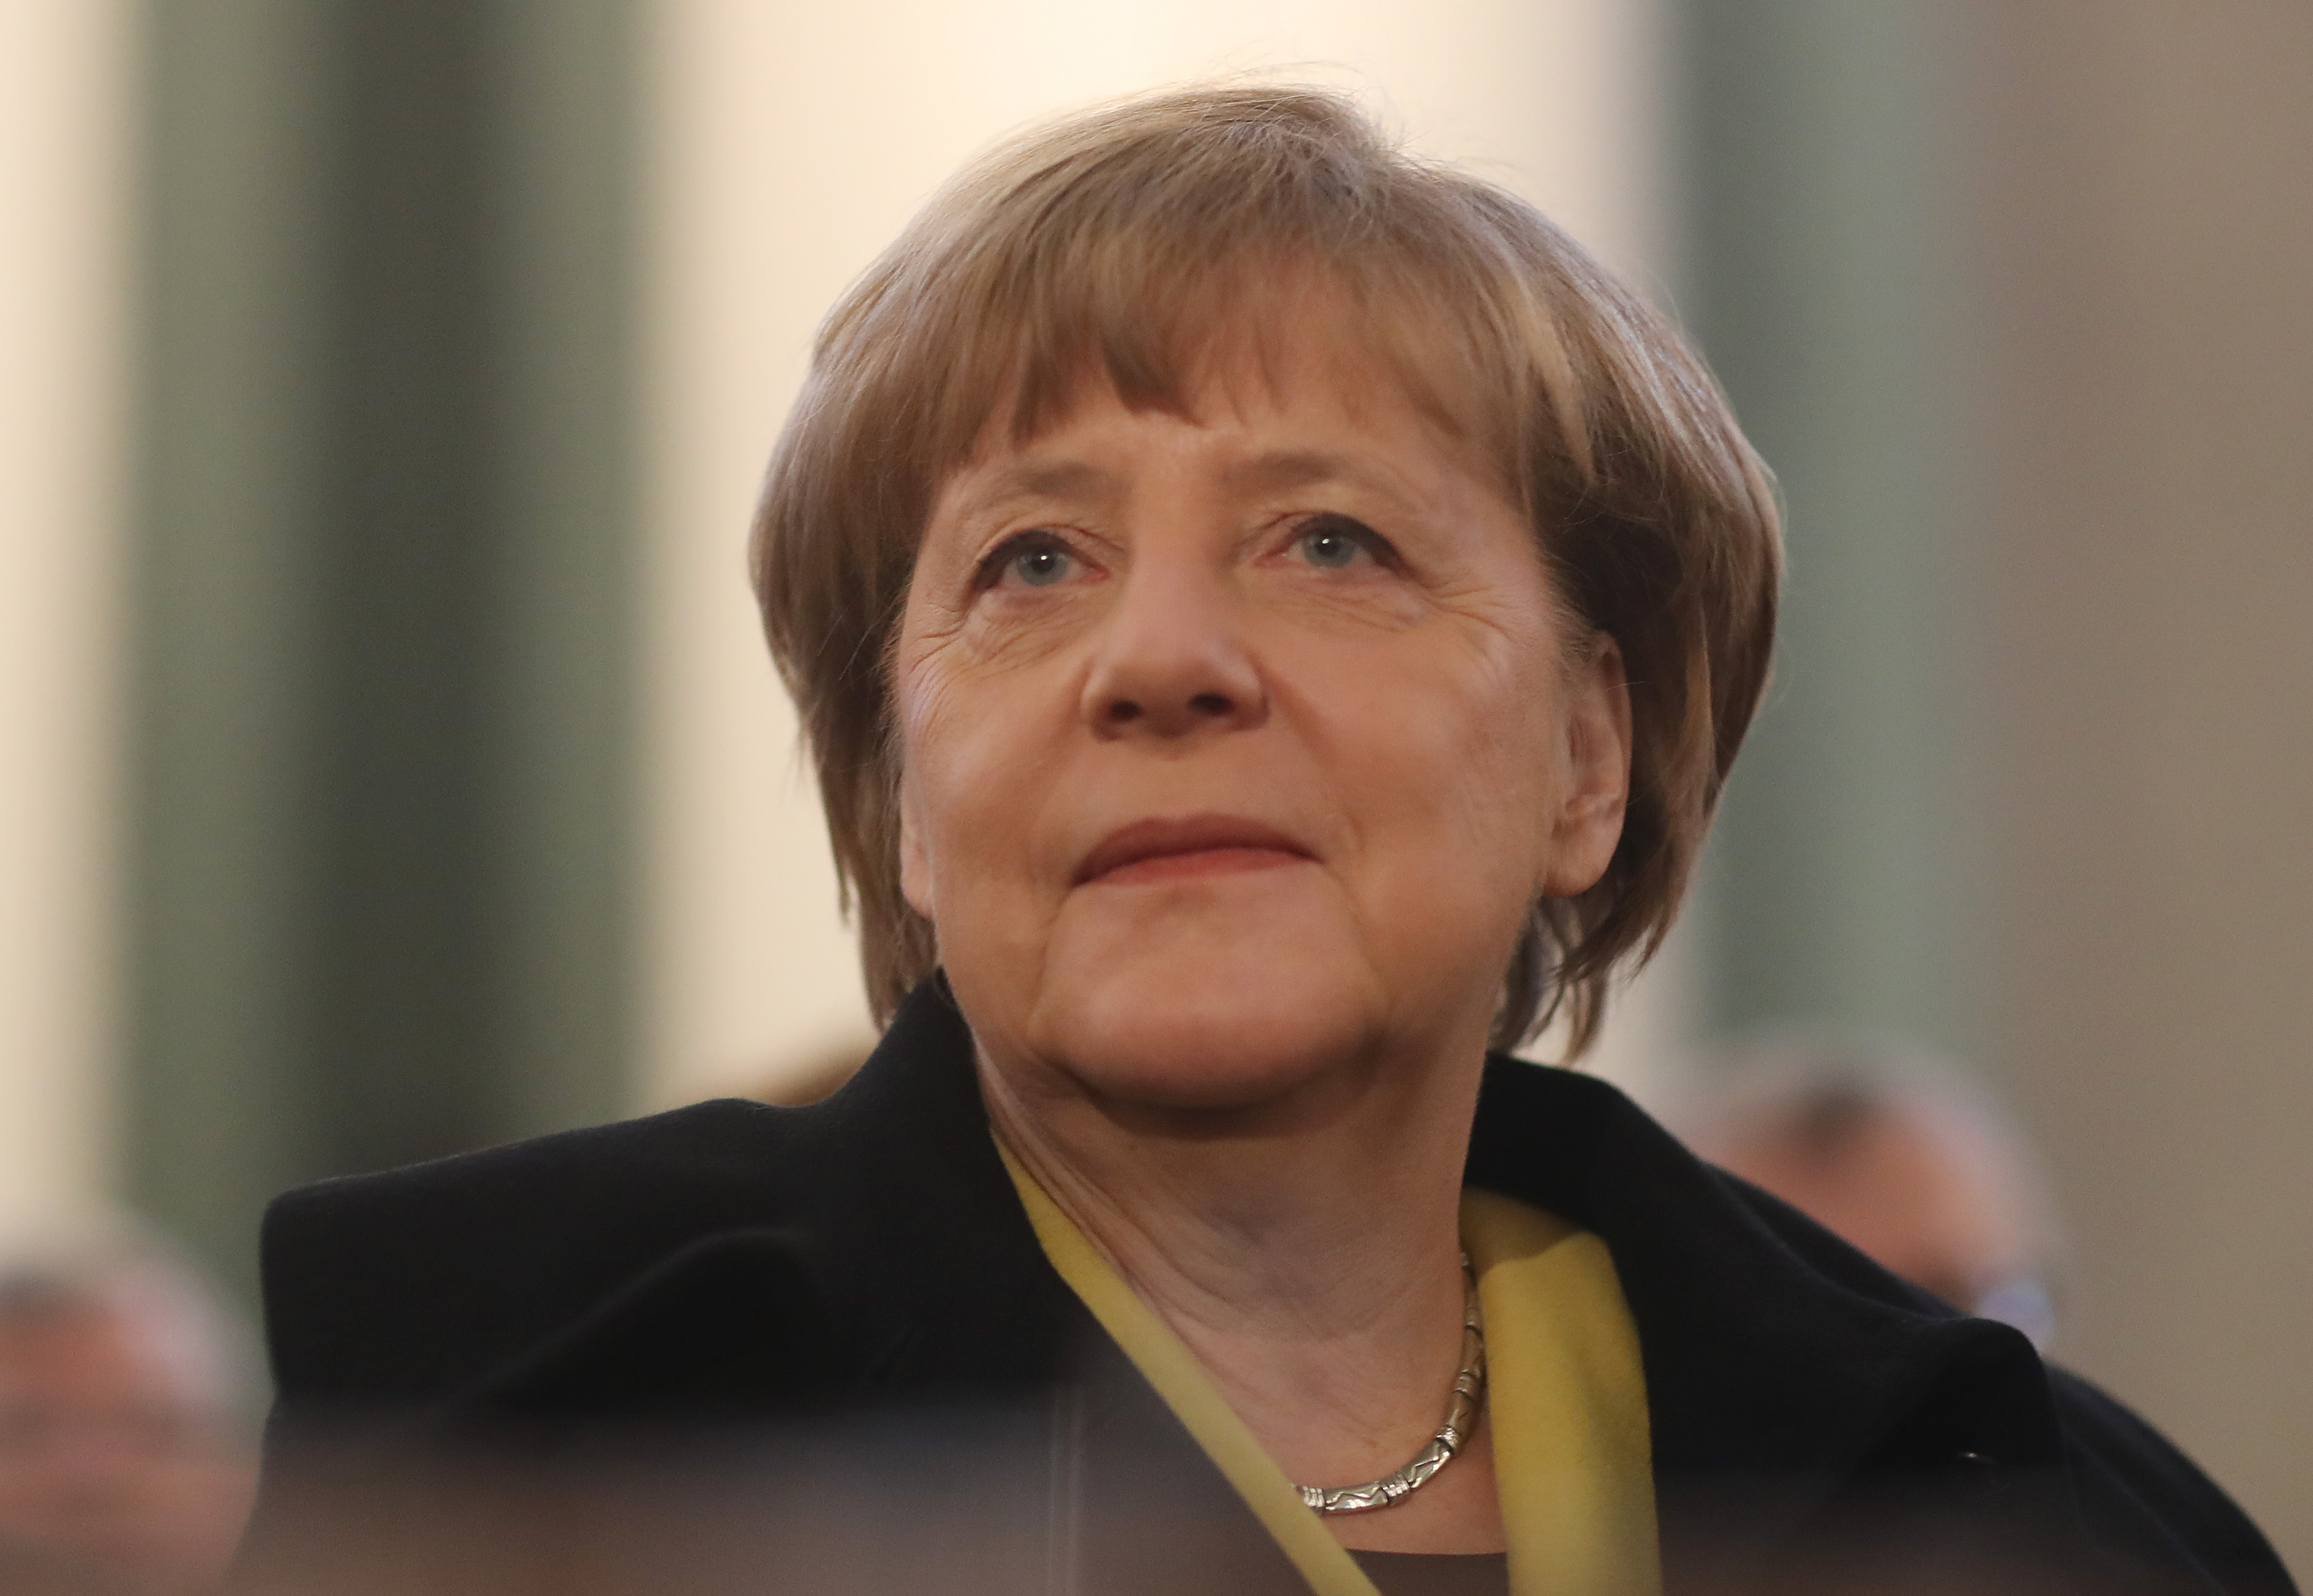 Предизвикателствата, пред които е изправена Меркел - от Москва до Близкия изток и от Вашингтон до Лондон - са плашещи